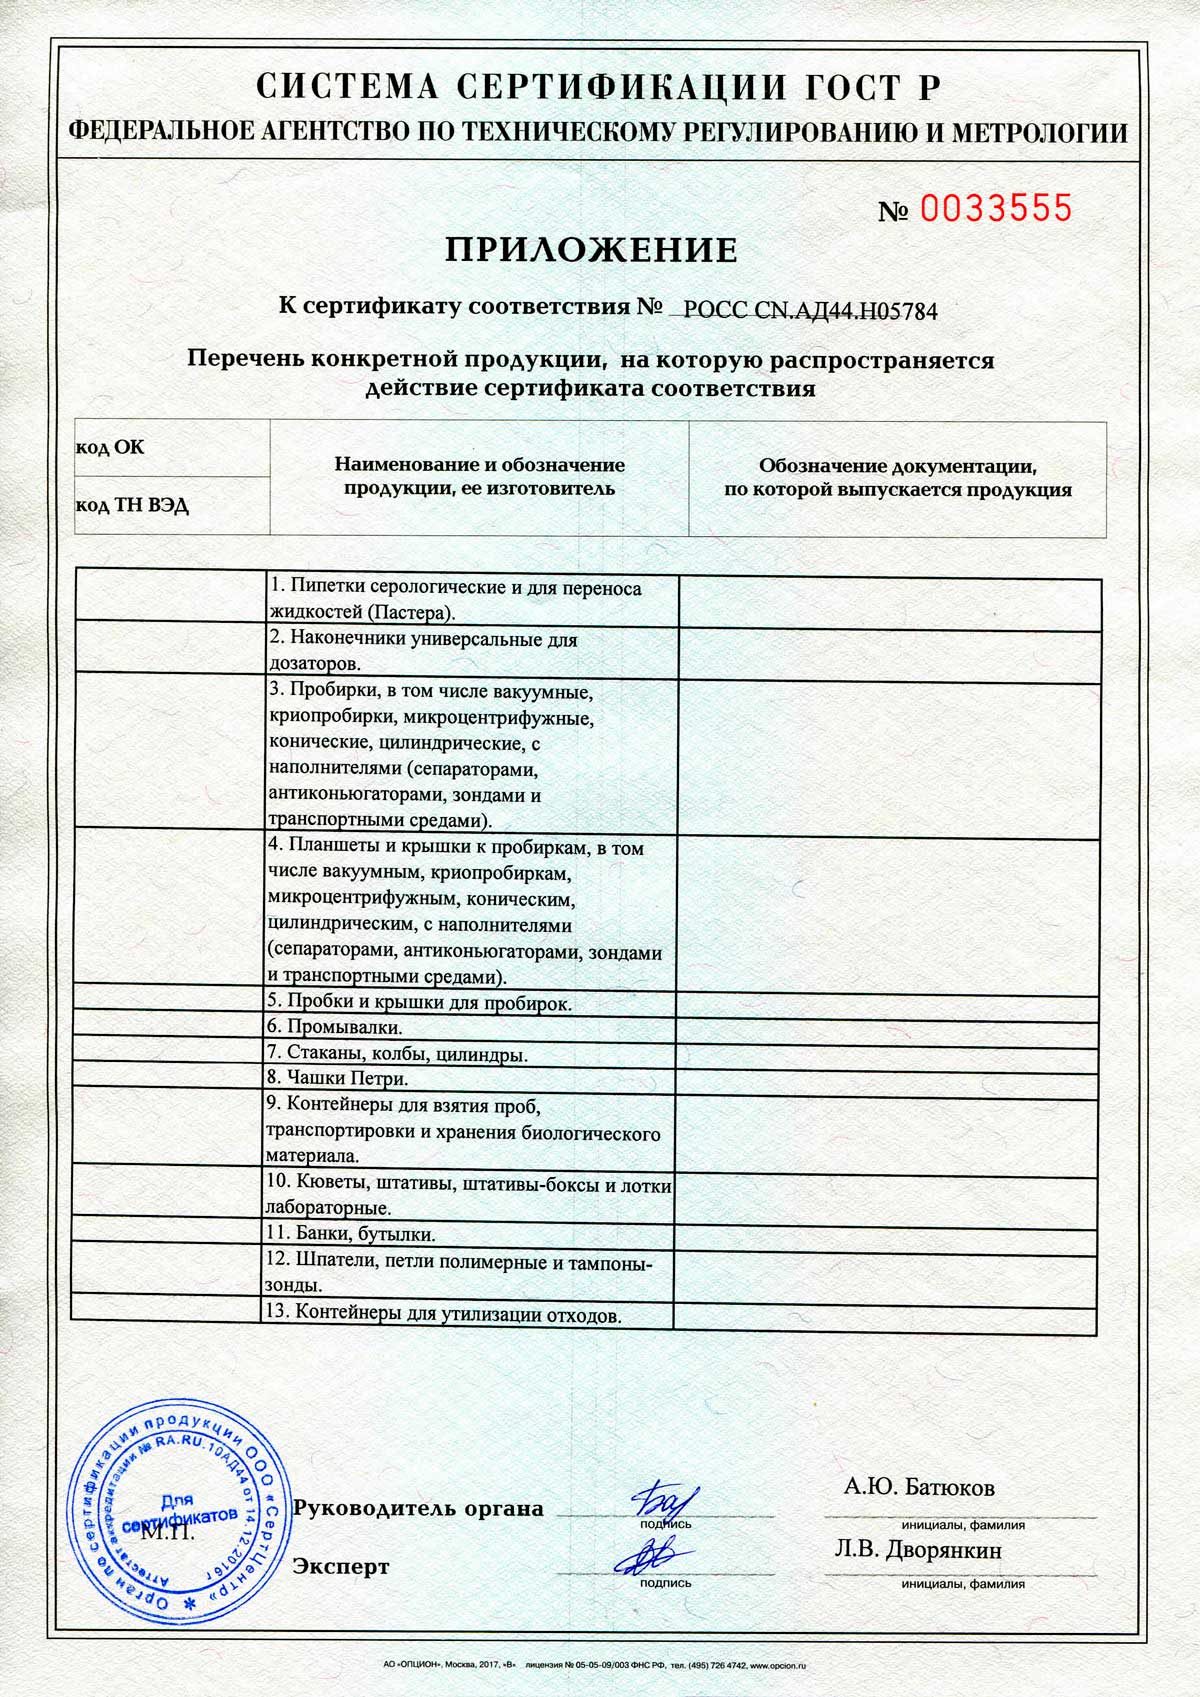 Сертификат соответствия на продукцию Гритмед без РУ-2